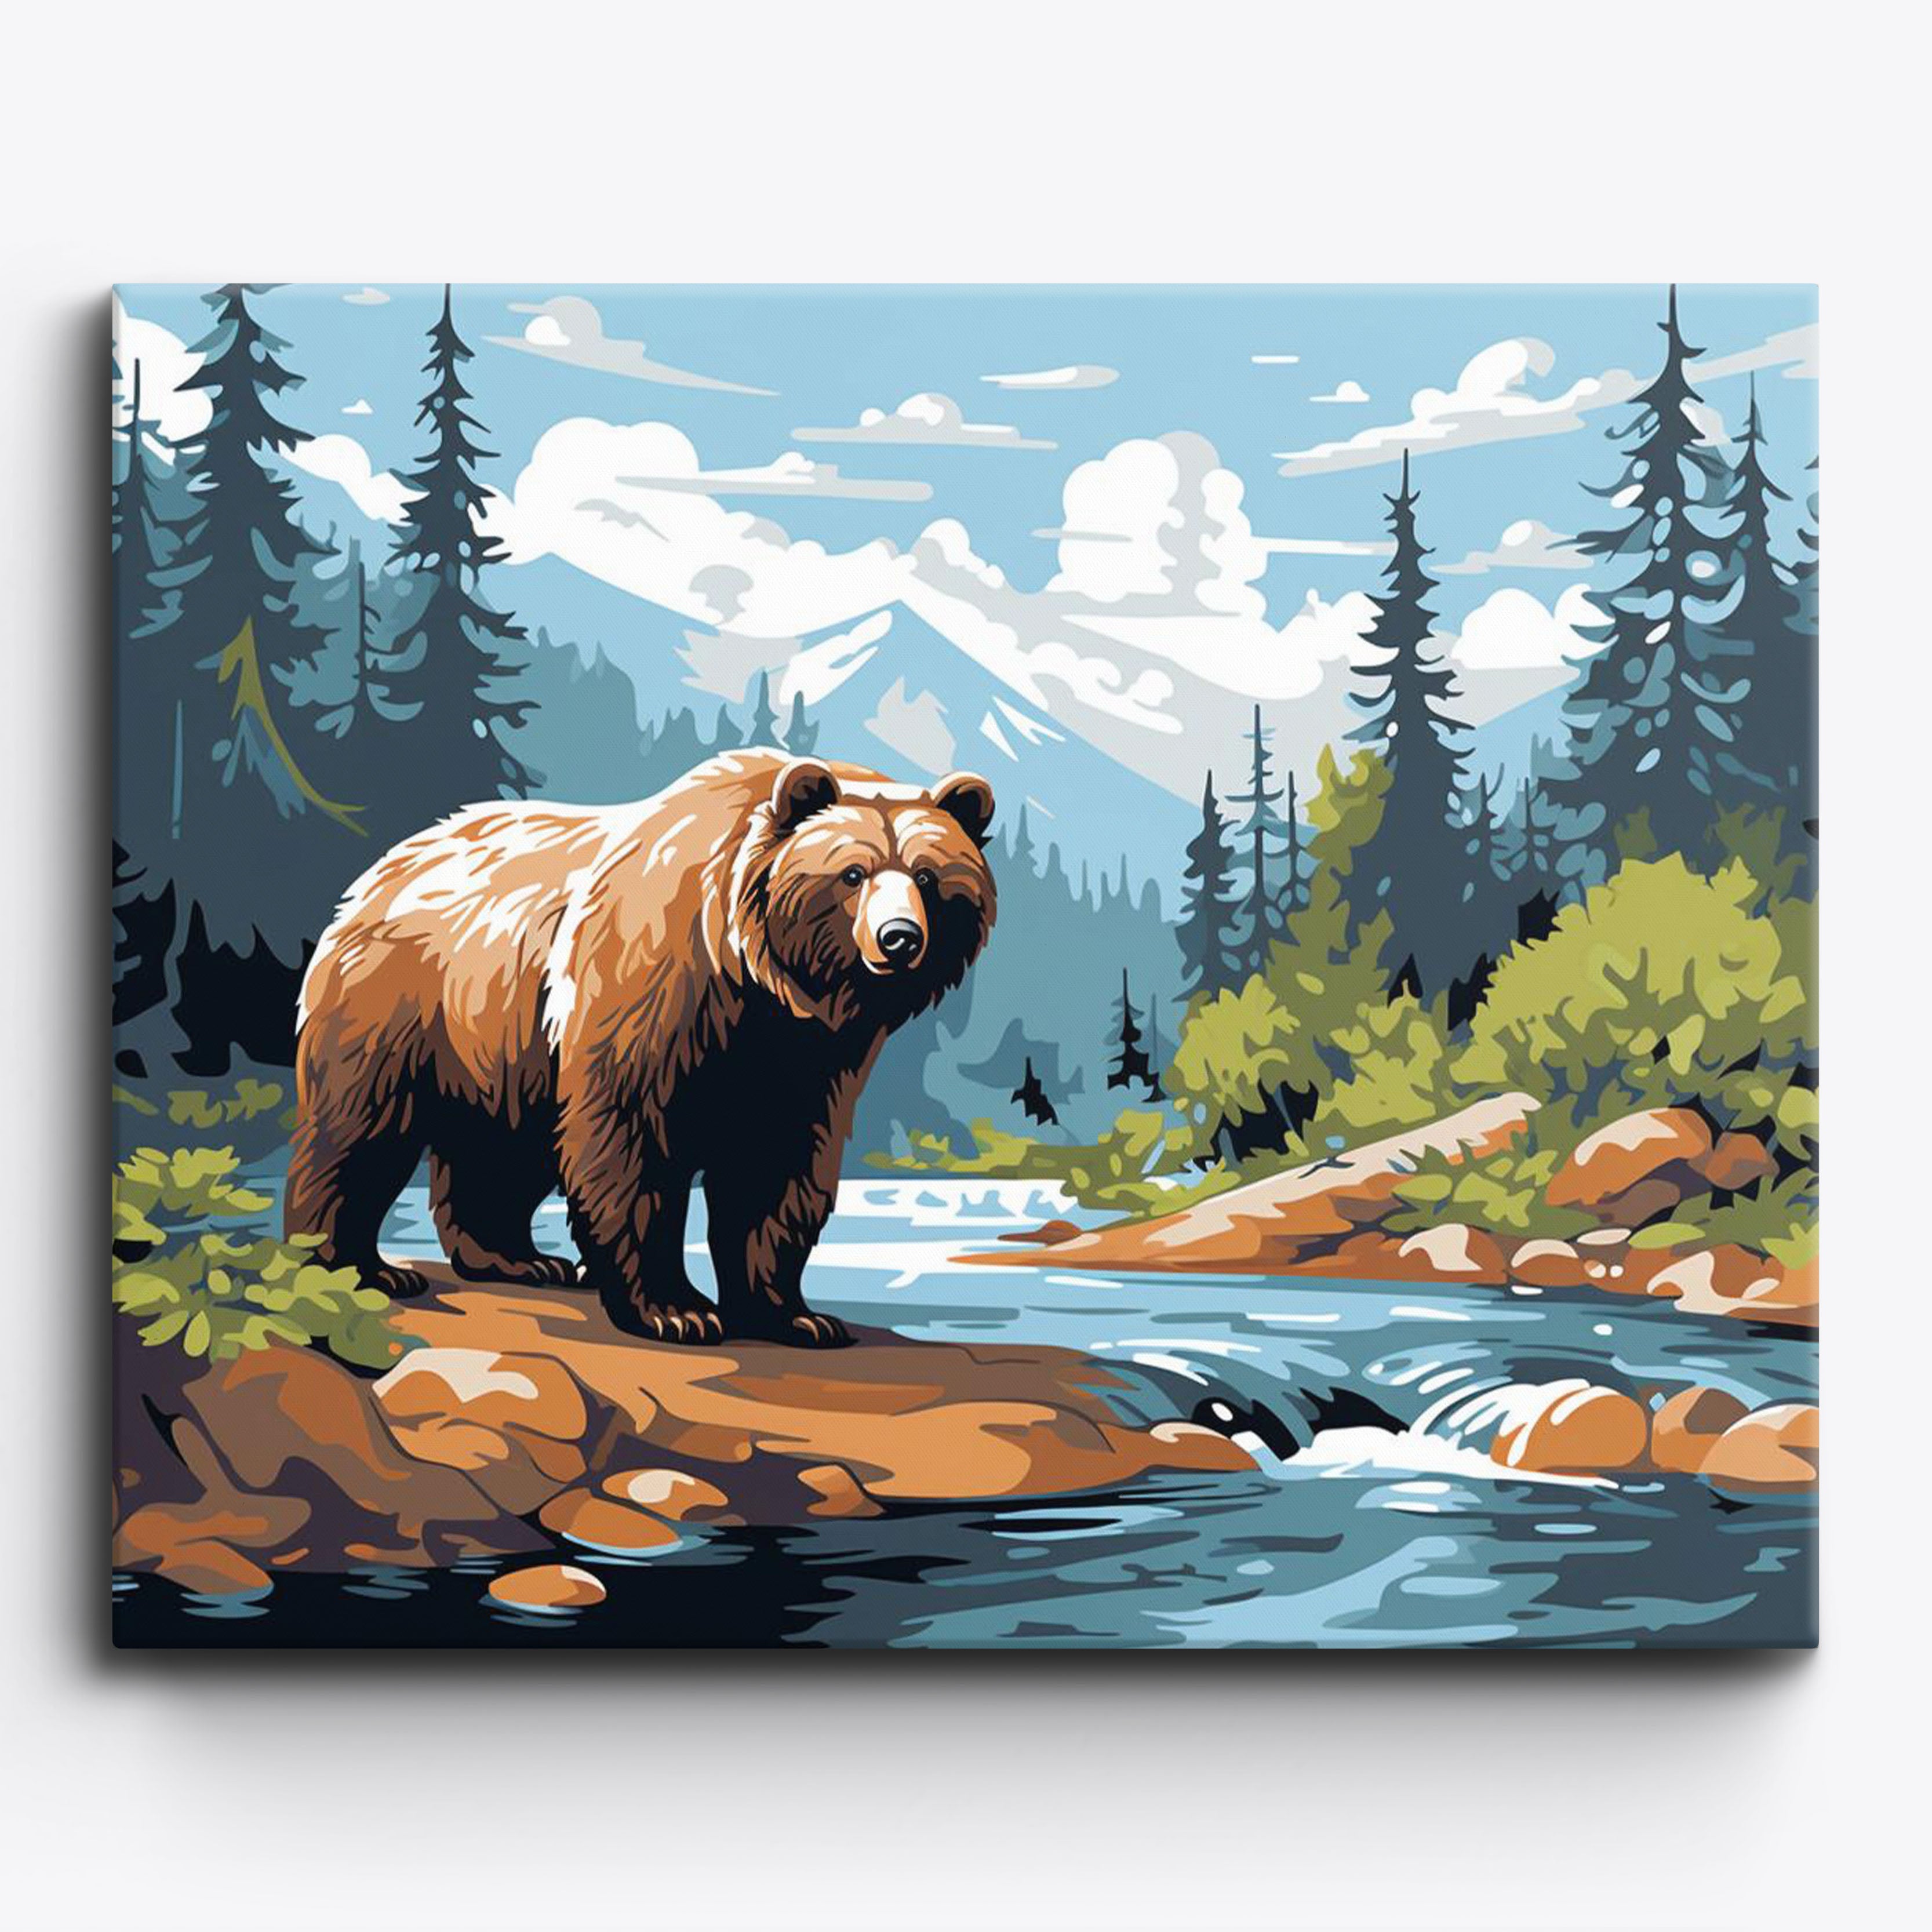 La cattura di un orso bruno